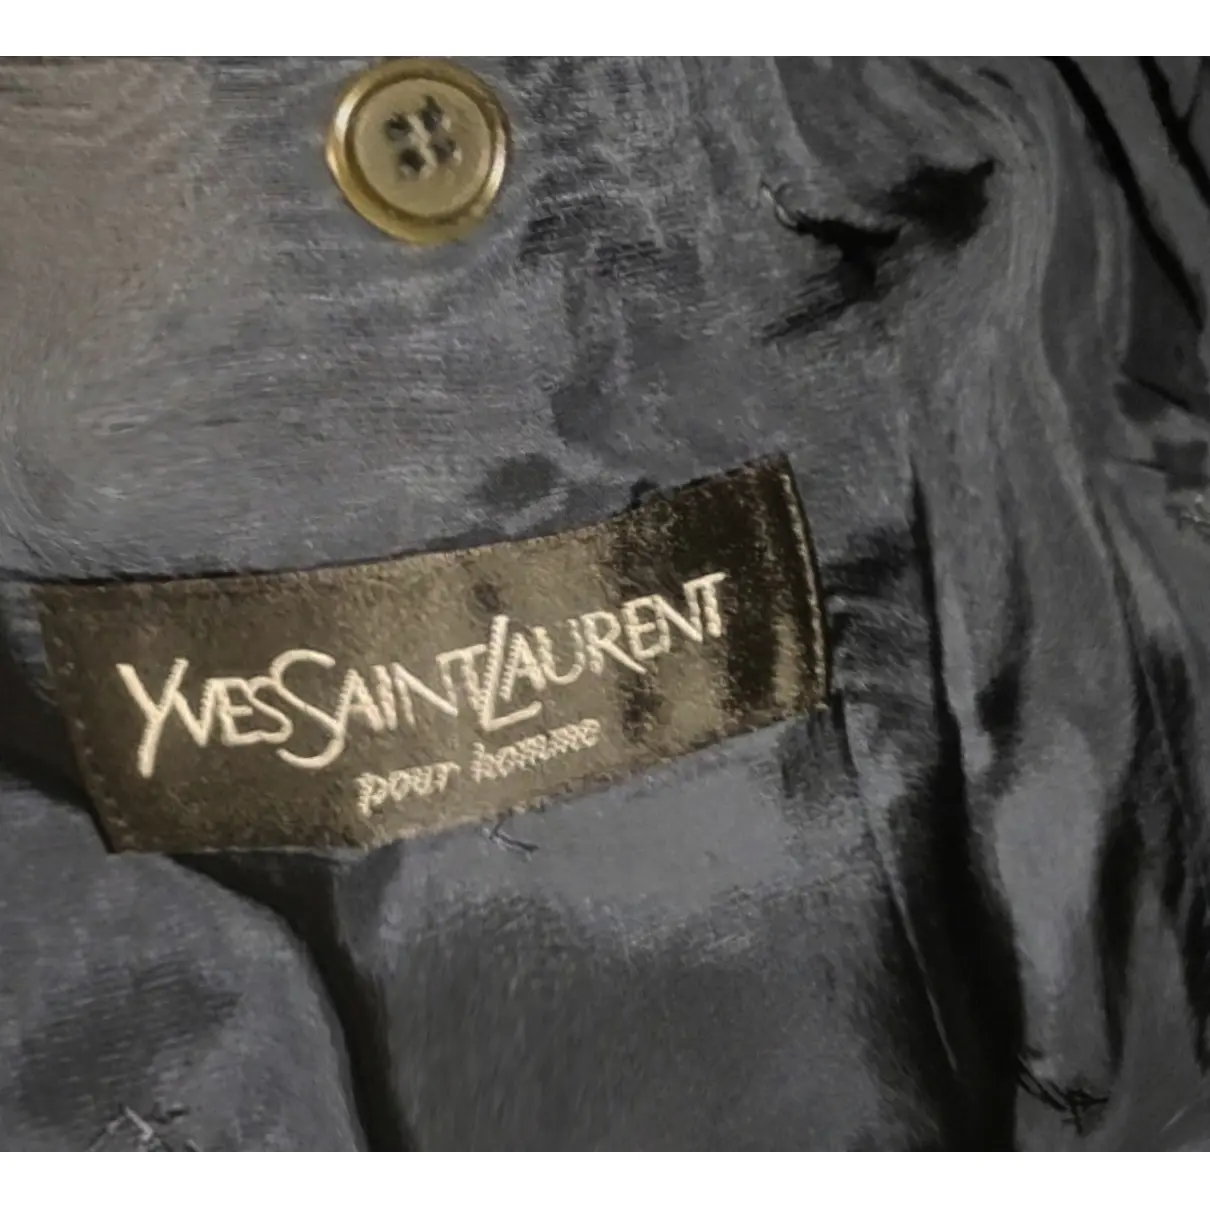 Buy Yves Saint Laurent Wool suit online - Vintage